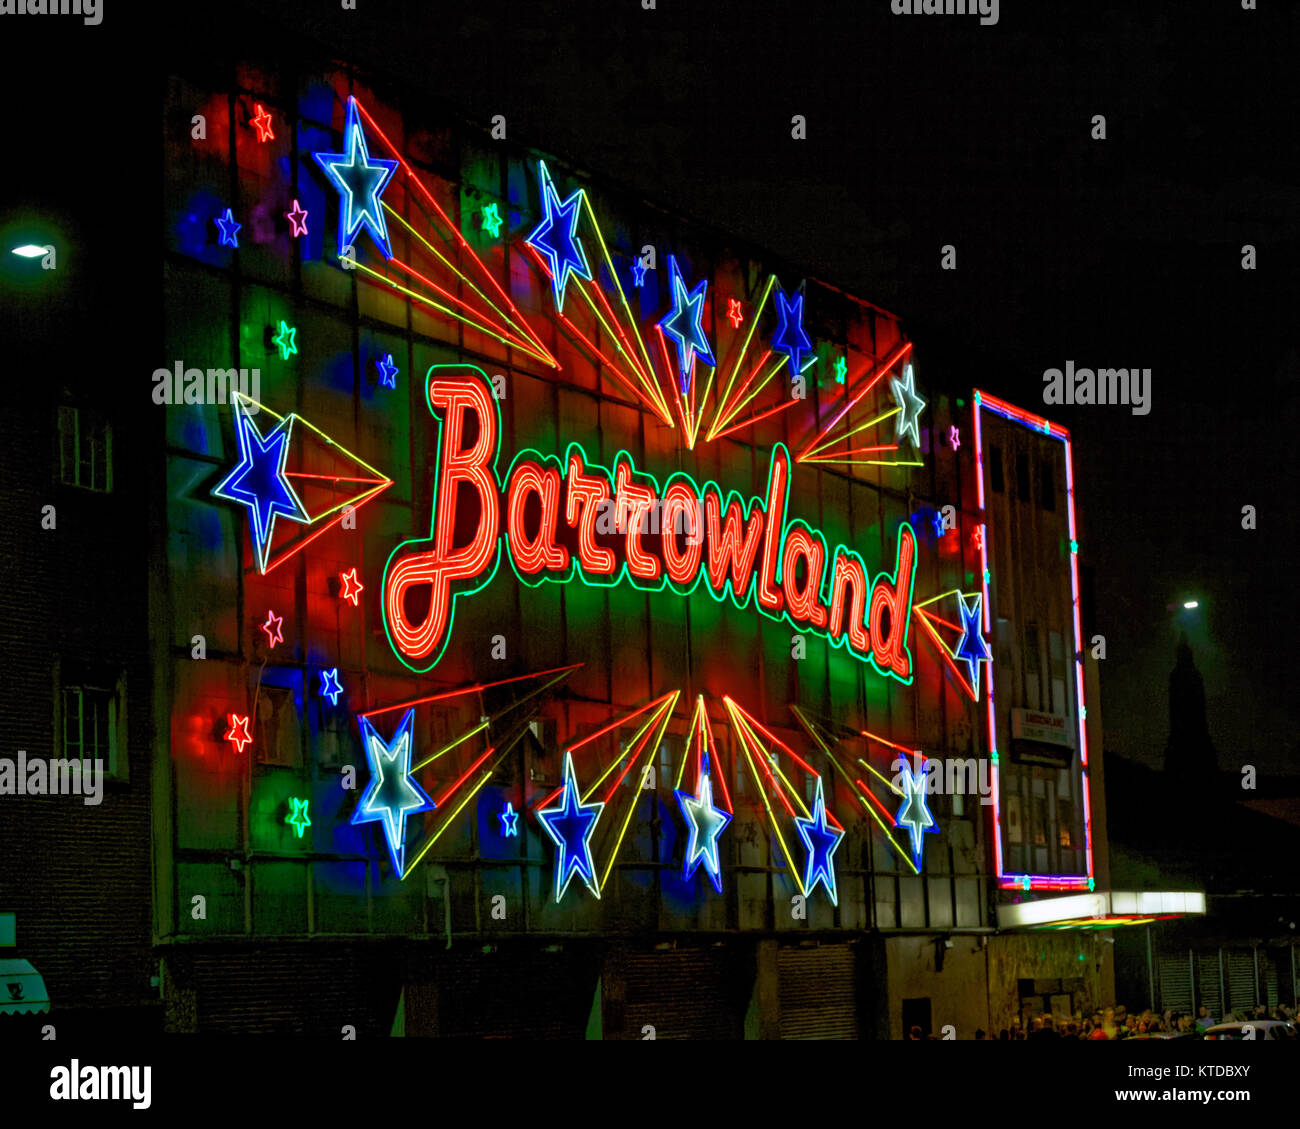 Glasgow barrowland Zeichen neon leuchtet in der Nacht der Gerry Zimt Konzert zeigen Stockfoto